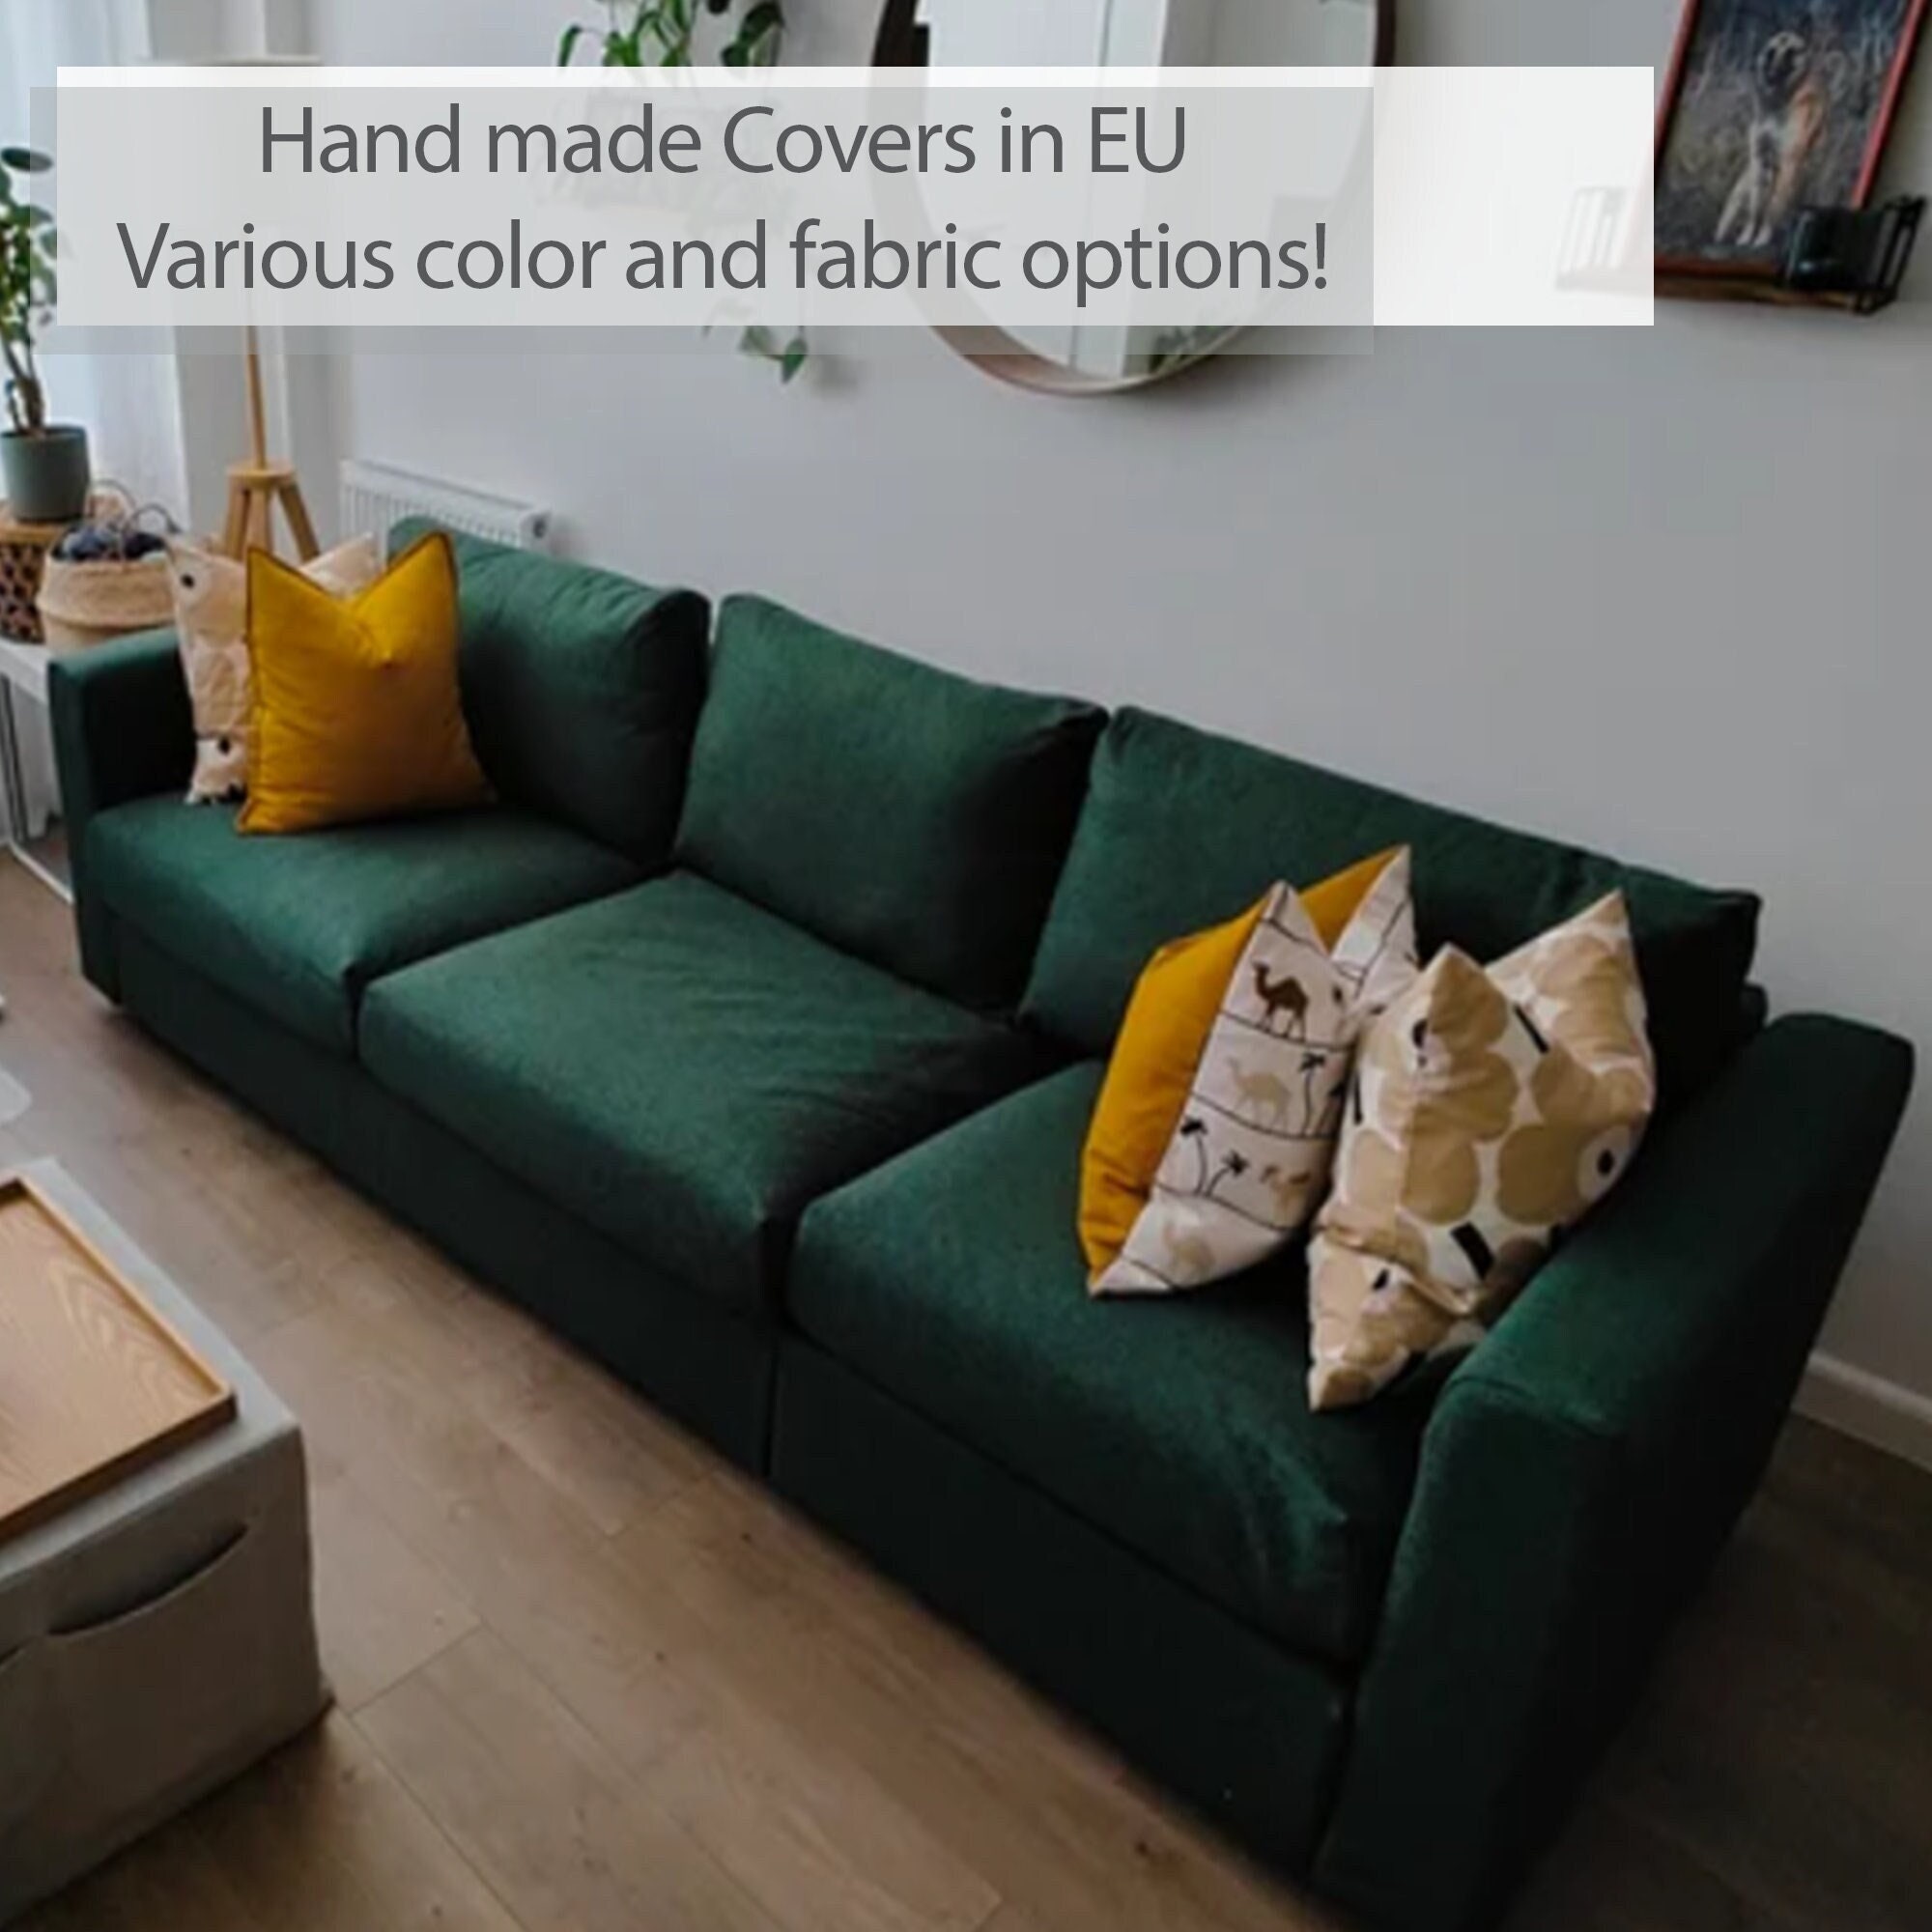 Vimle 3er-sofa, mit nackenkissen mit breiten armlehnen/gunnared beige  Angebot bei IKEA